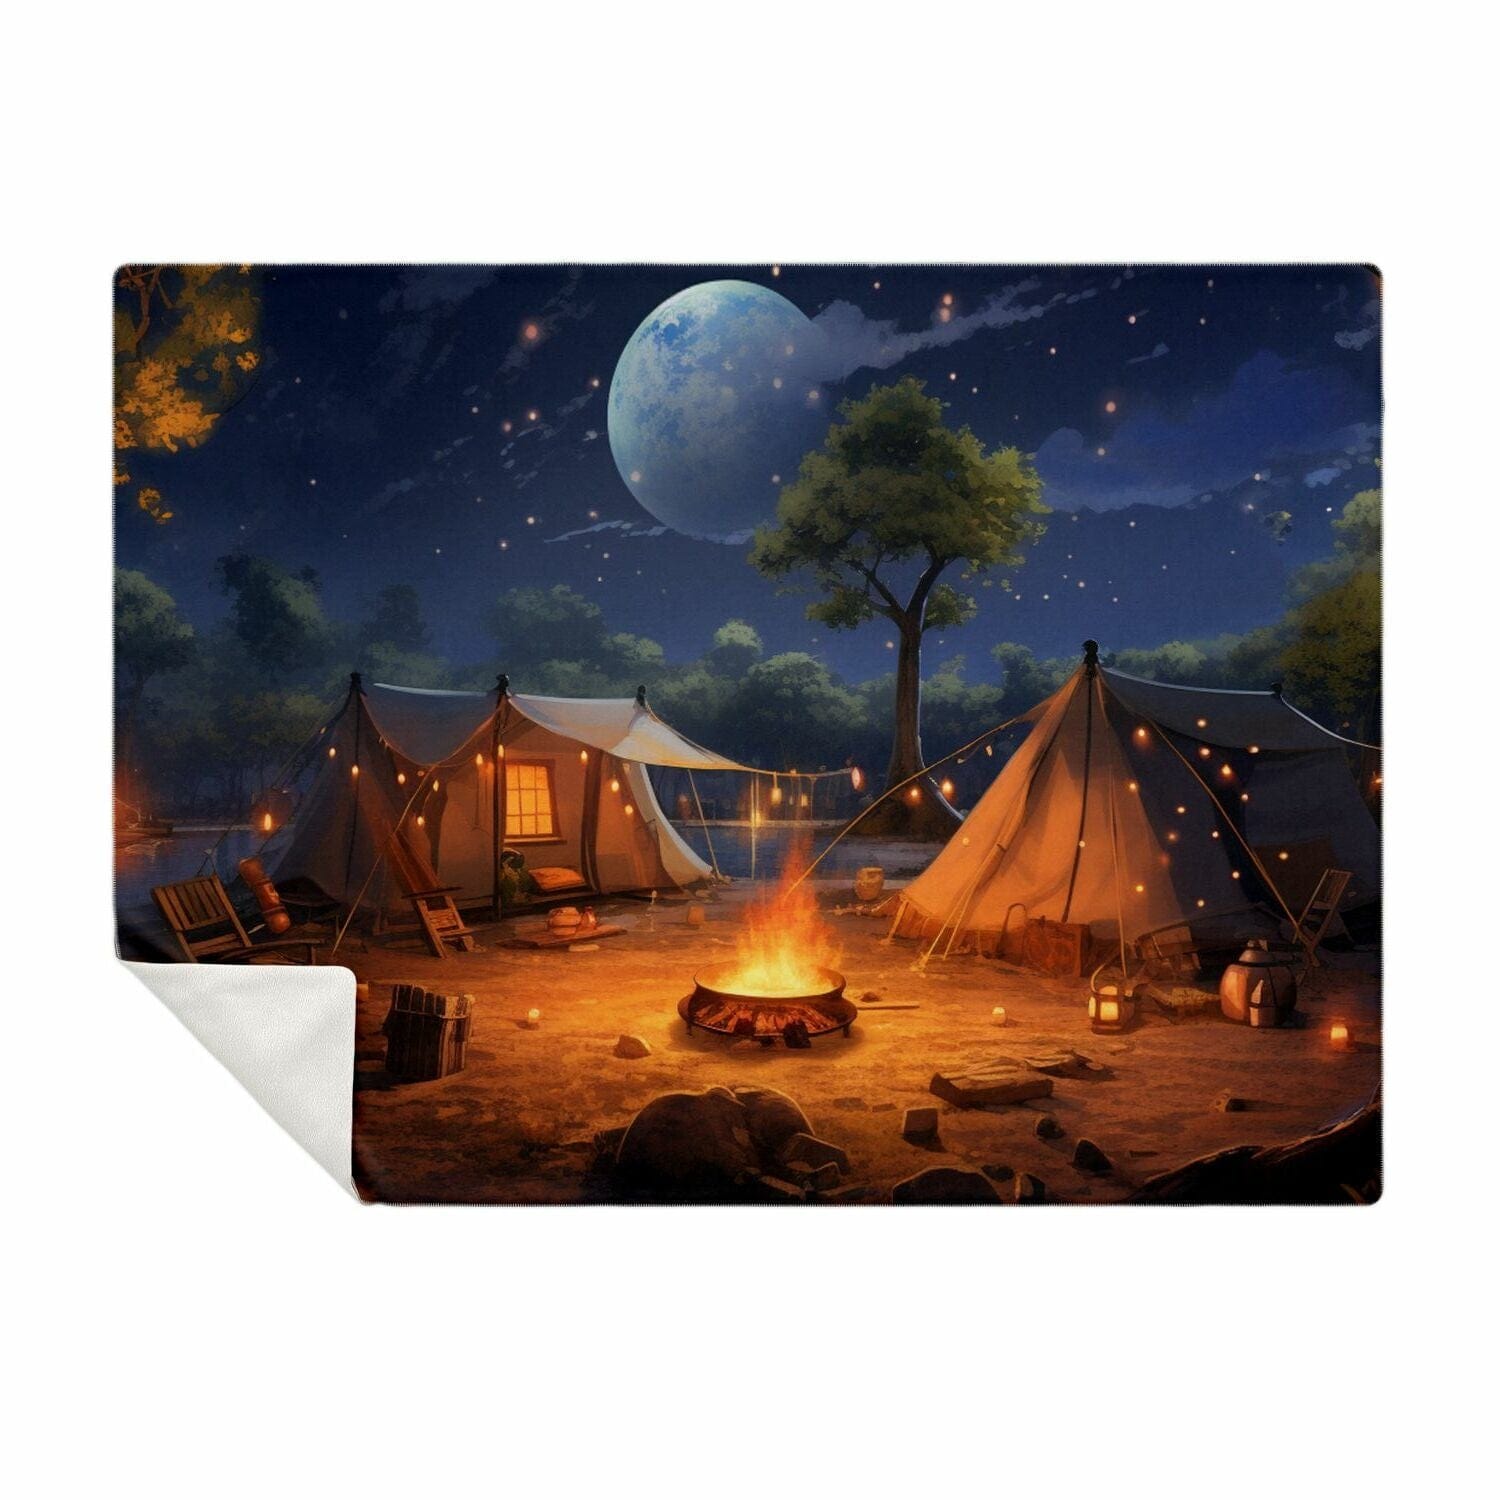 Campingfanstore Premium Microfleece Blanket